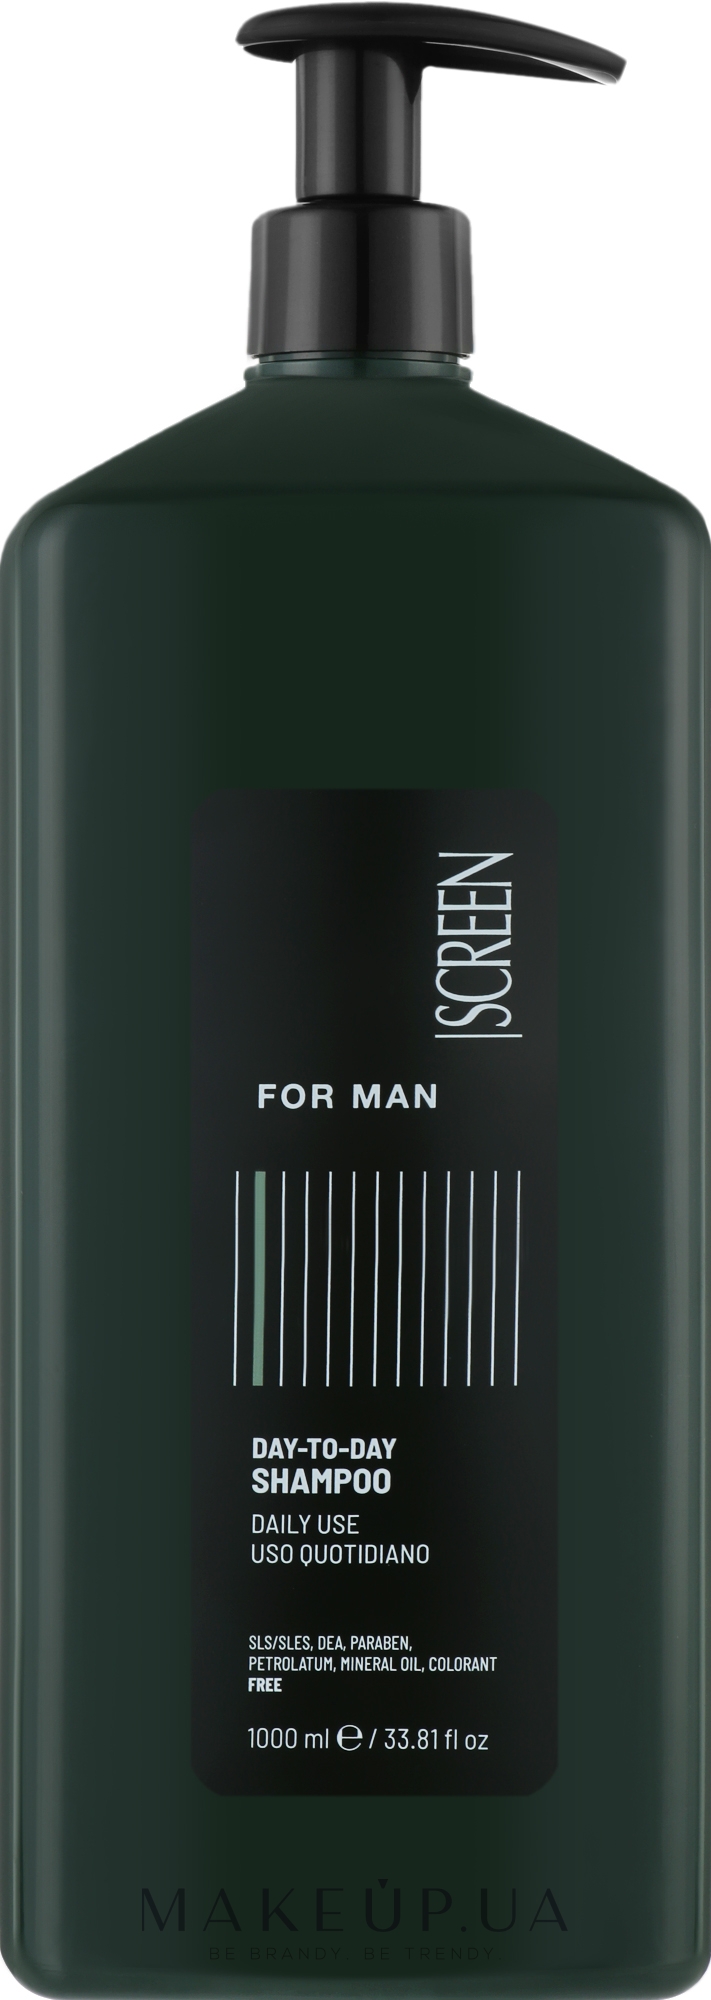 Мужской шампунь для волос, для ежедневного использования - Screen For Man Day-To-Day Shampoo  — фото 1000ml